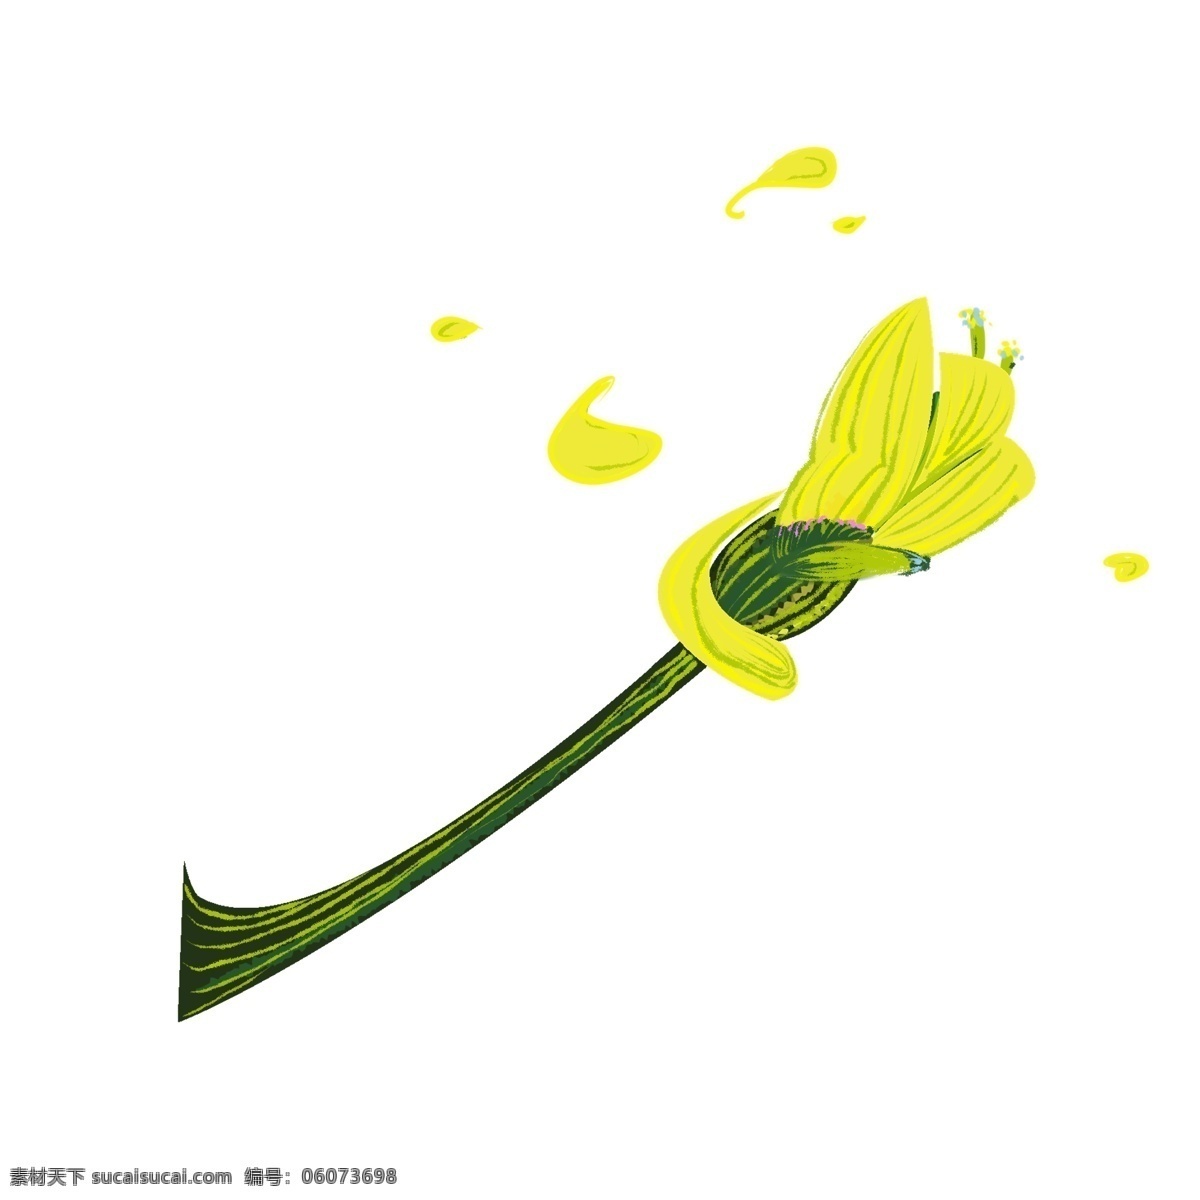 只 花苞 装饰 插图 装饰花苞 油菜花苞 掉落的花苞 黄色花苞 绿色藤条 卡通花苞 花苞插图 斜视花苞